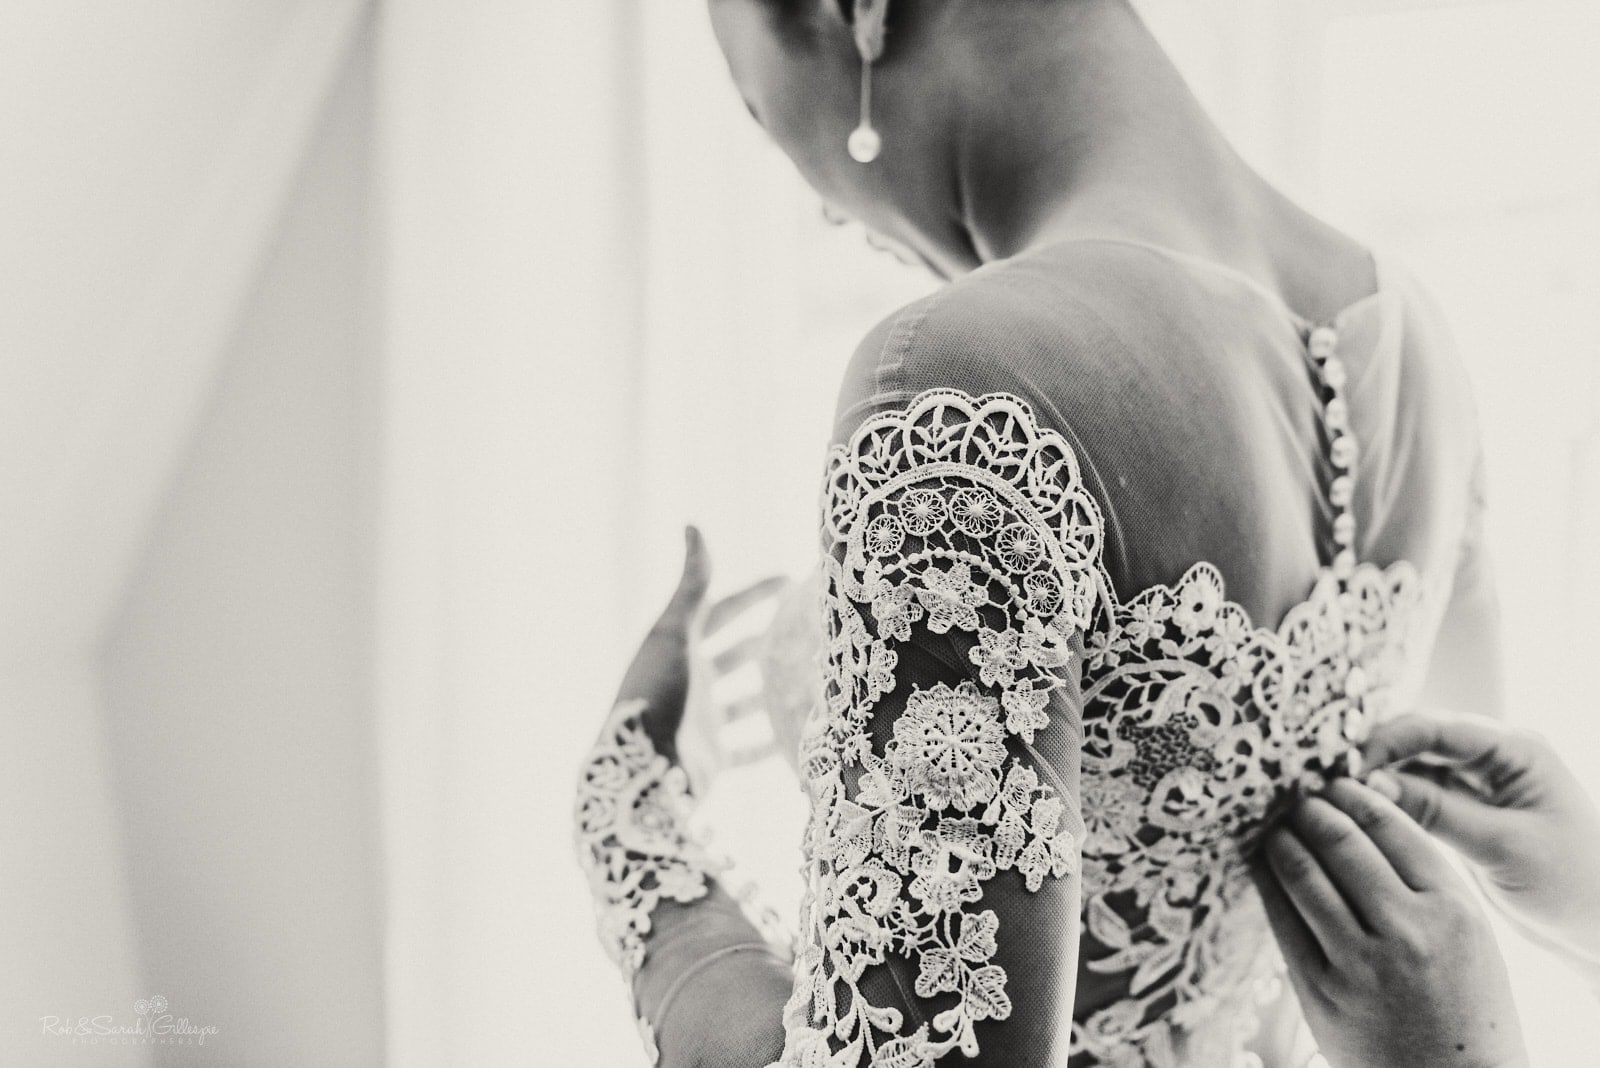 Detail of wedding dress as bride prepares